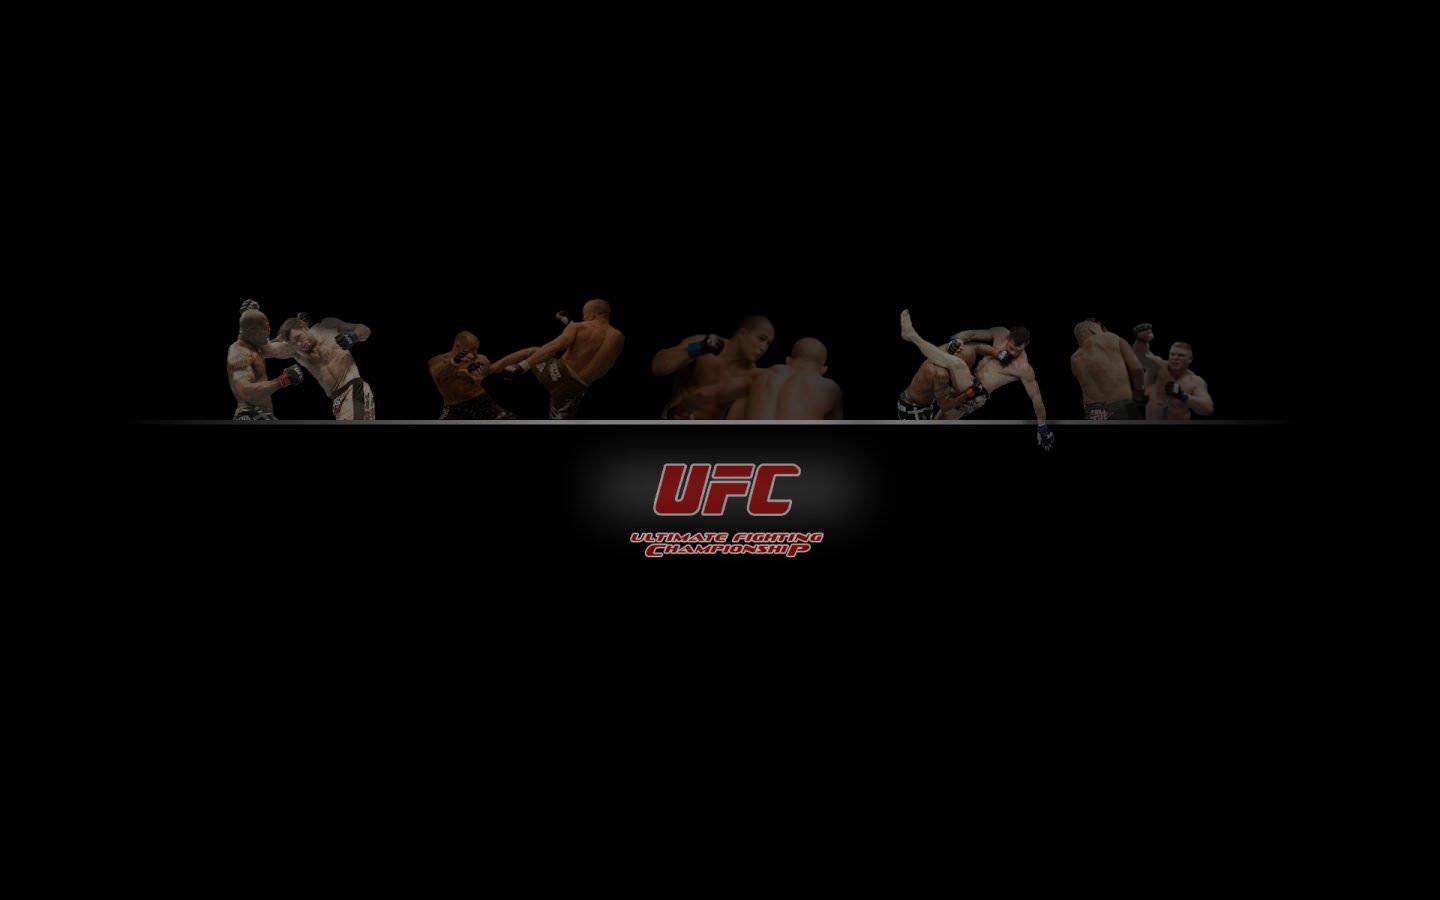 MMA (Mixed Martial Arts) wallpaper 1440x900 desktop background